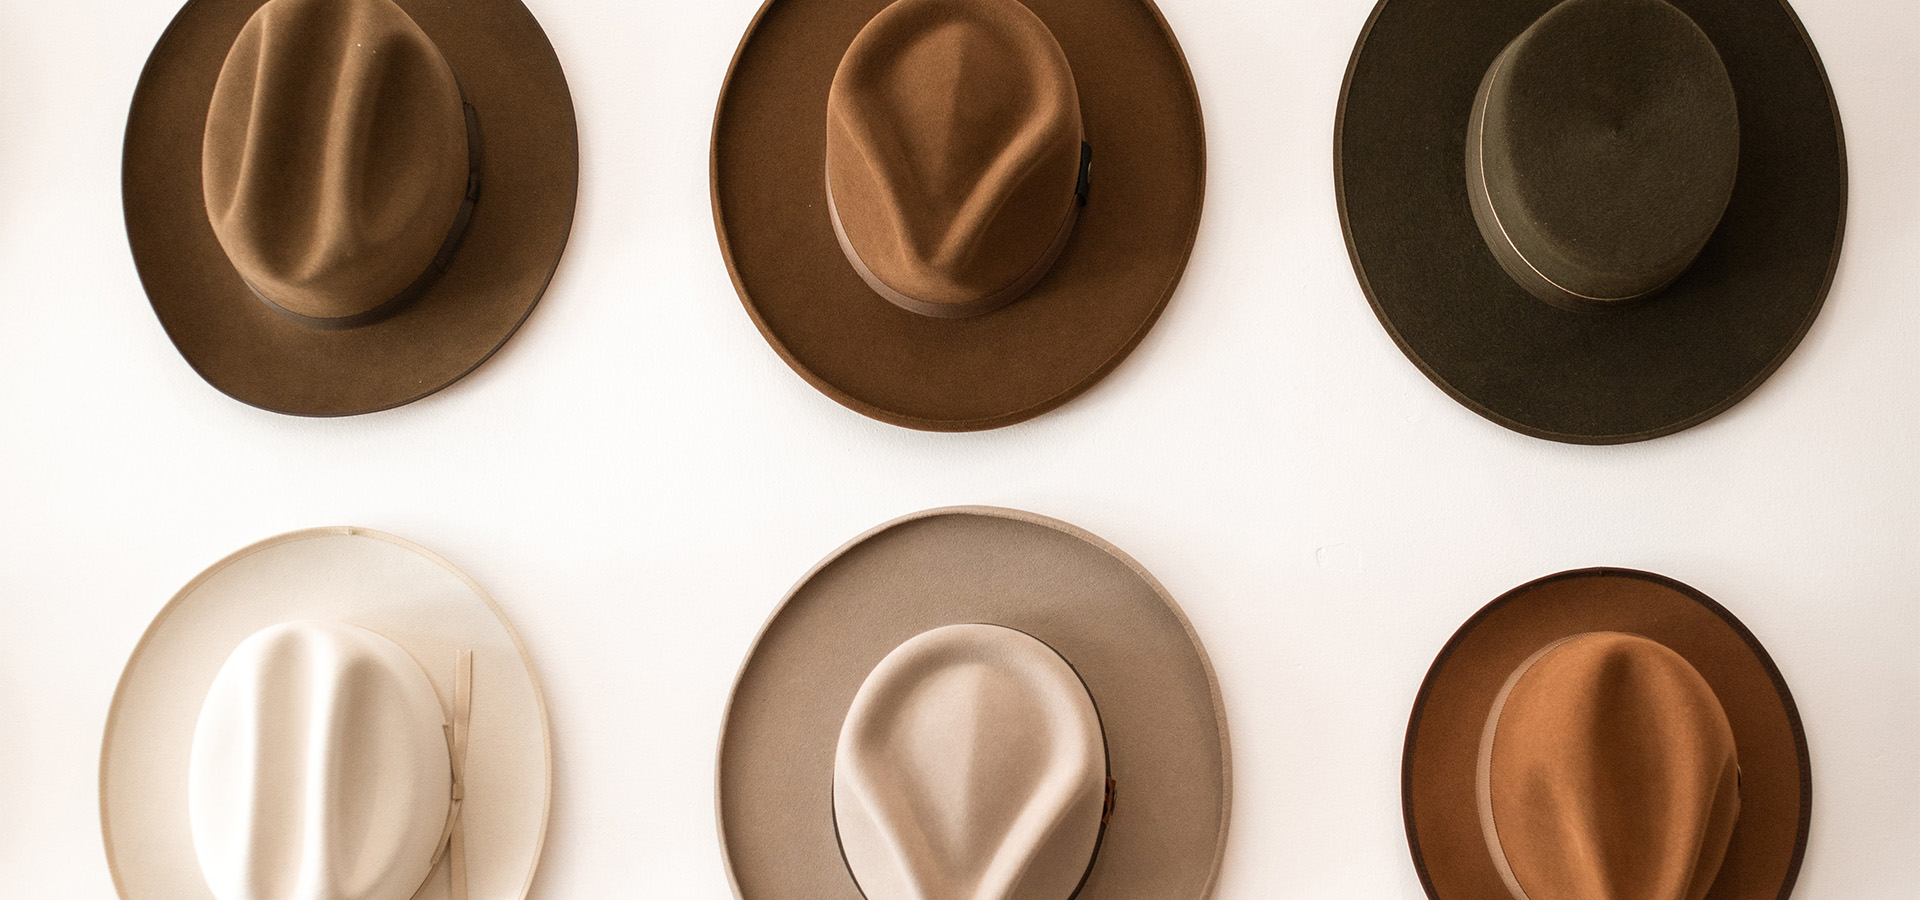 Le brainstorming - six chapeaux